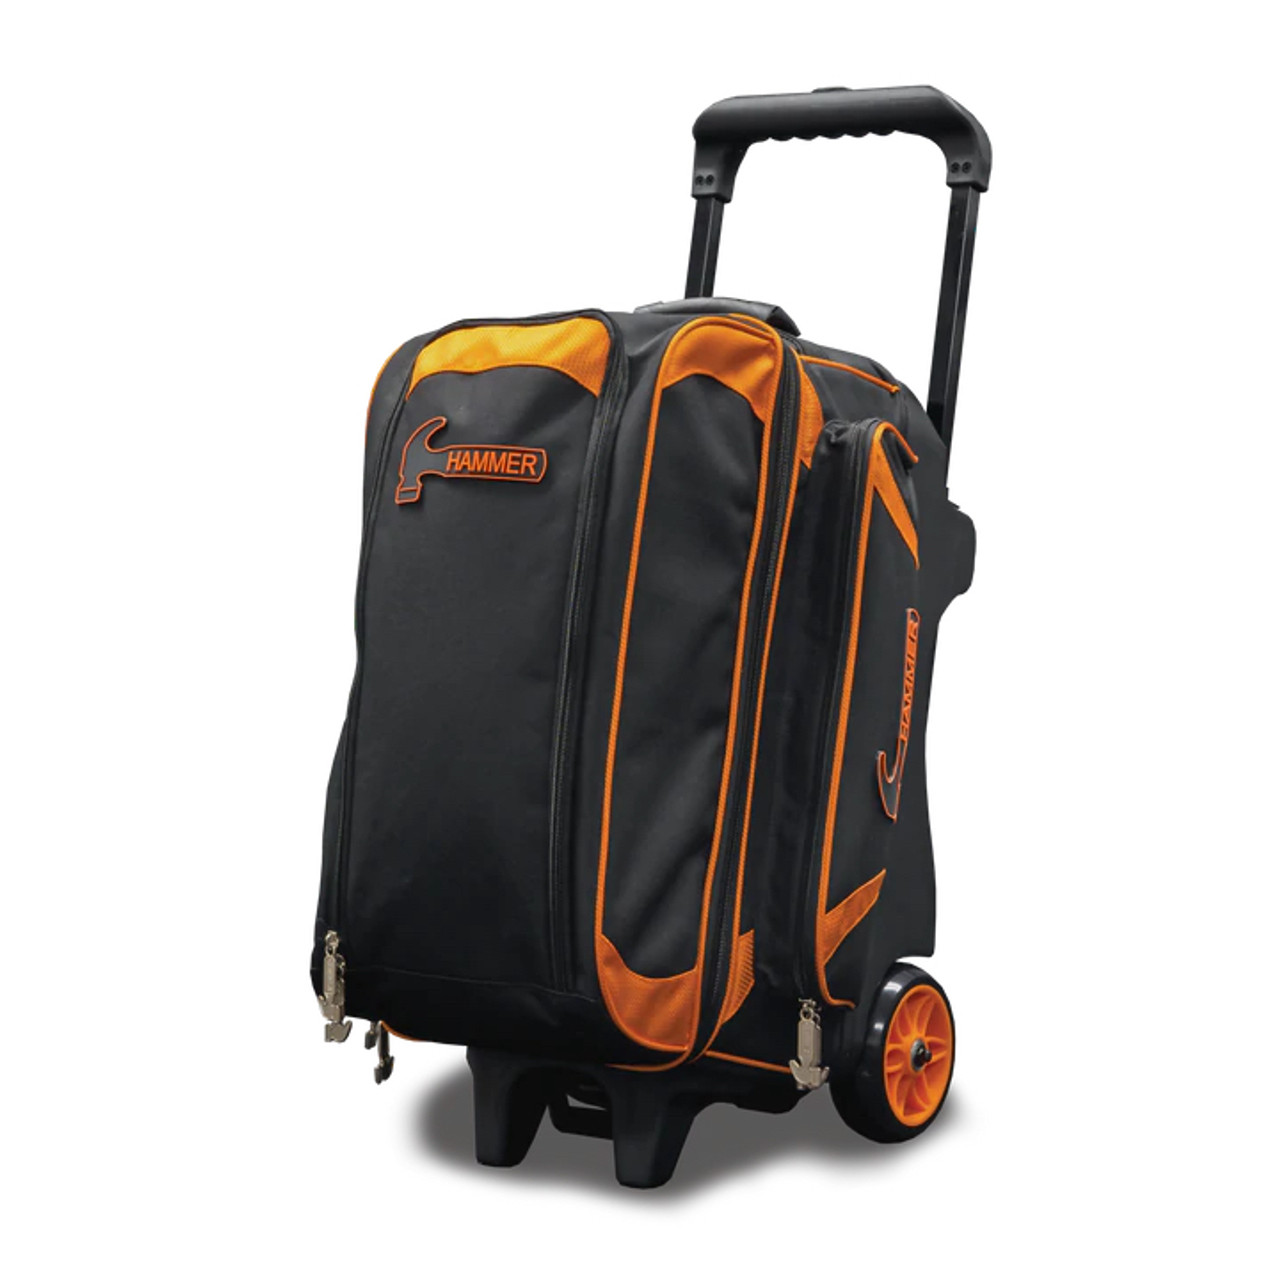 Hammer Premium 2 Ball Roller Bag Black/Orange